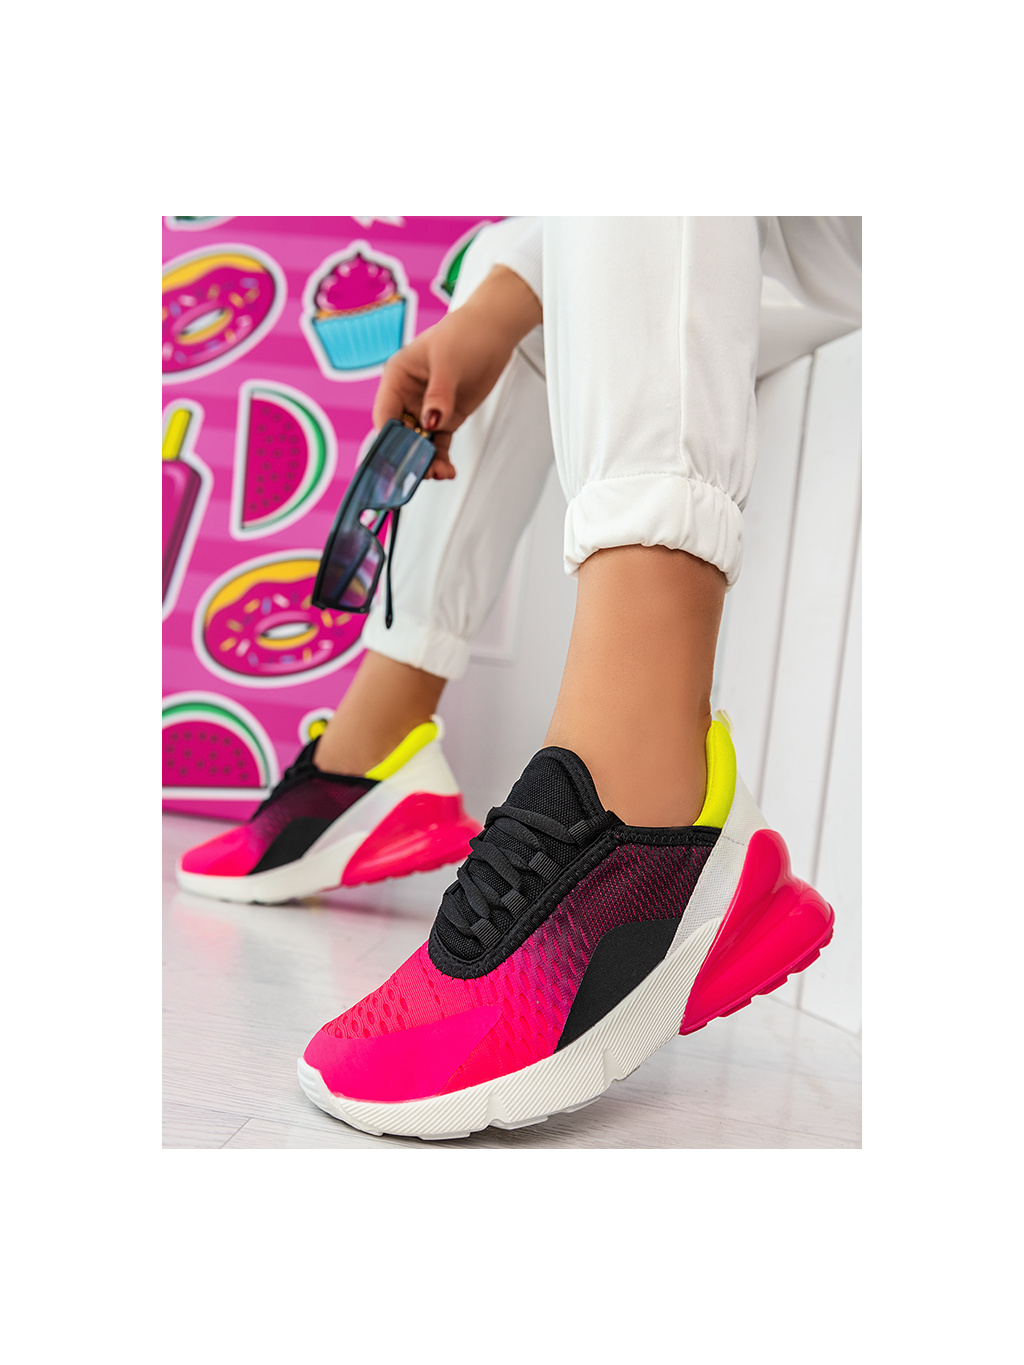 Dámska ružovo-čierna športová obuv HY110-5B